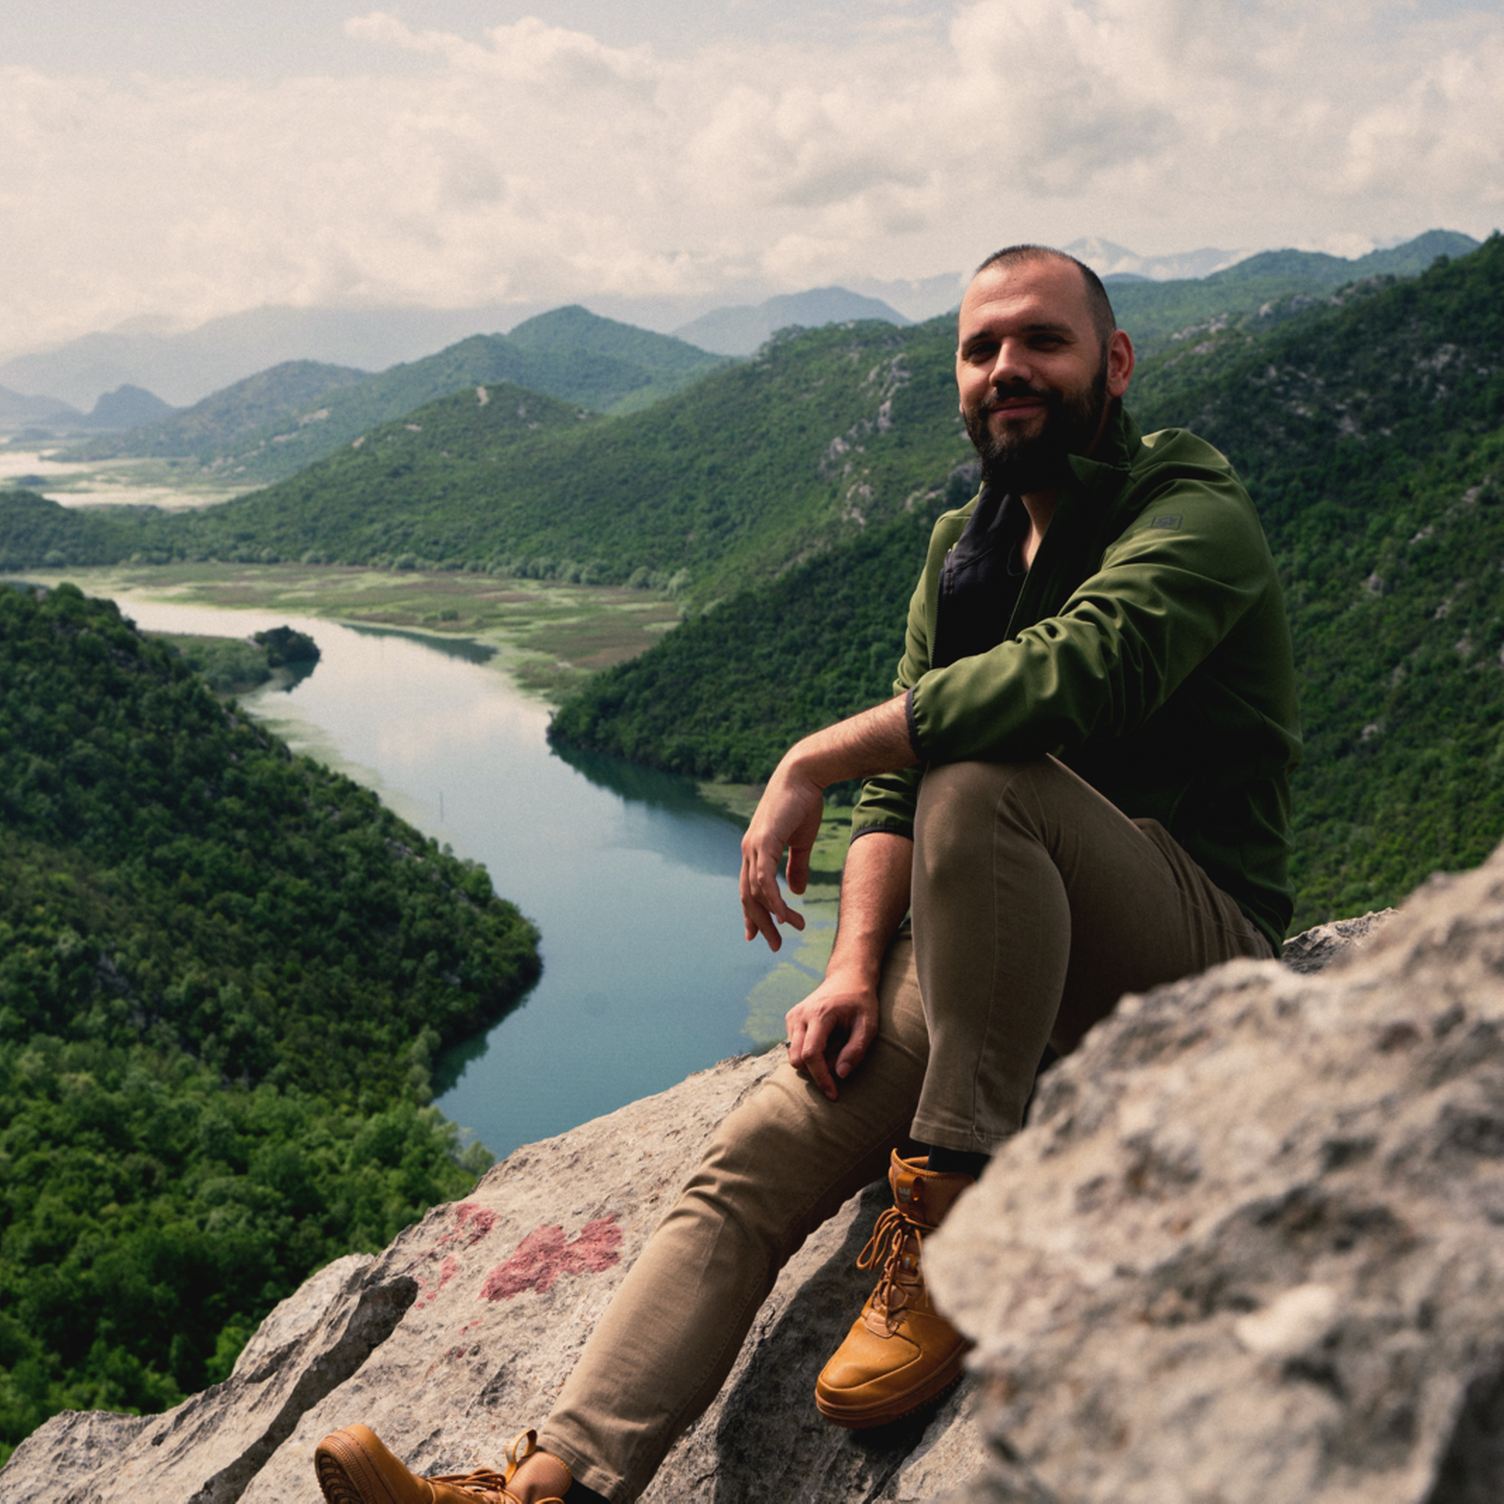 Nikola, lokaler Reiseexperte von Evaneos in Montenegro, sitzend vor einer Fluss- und Berglandschaft